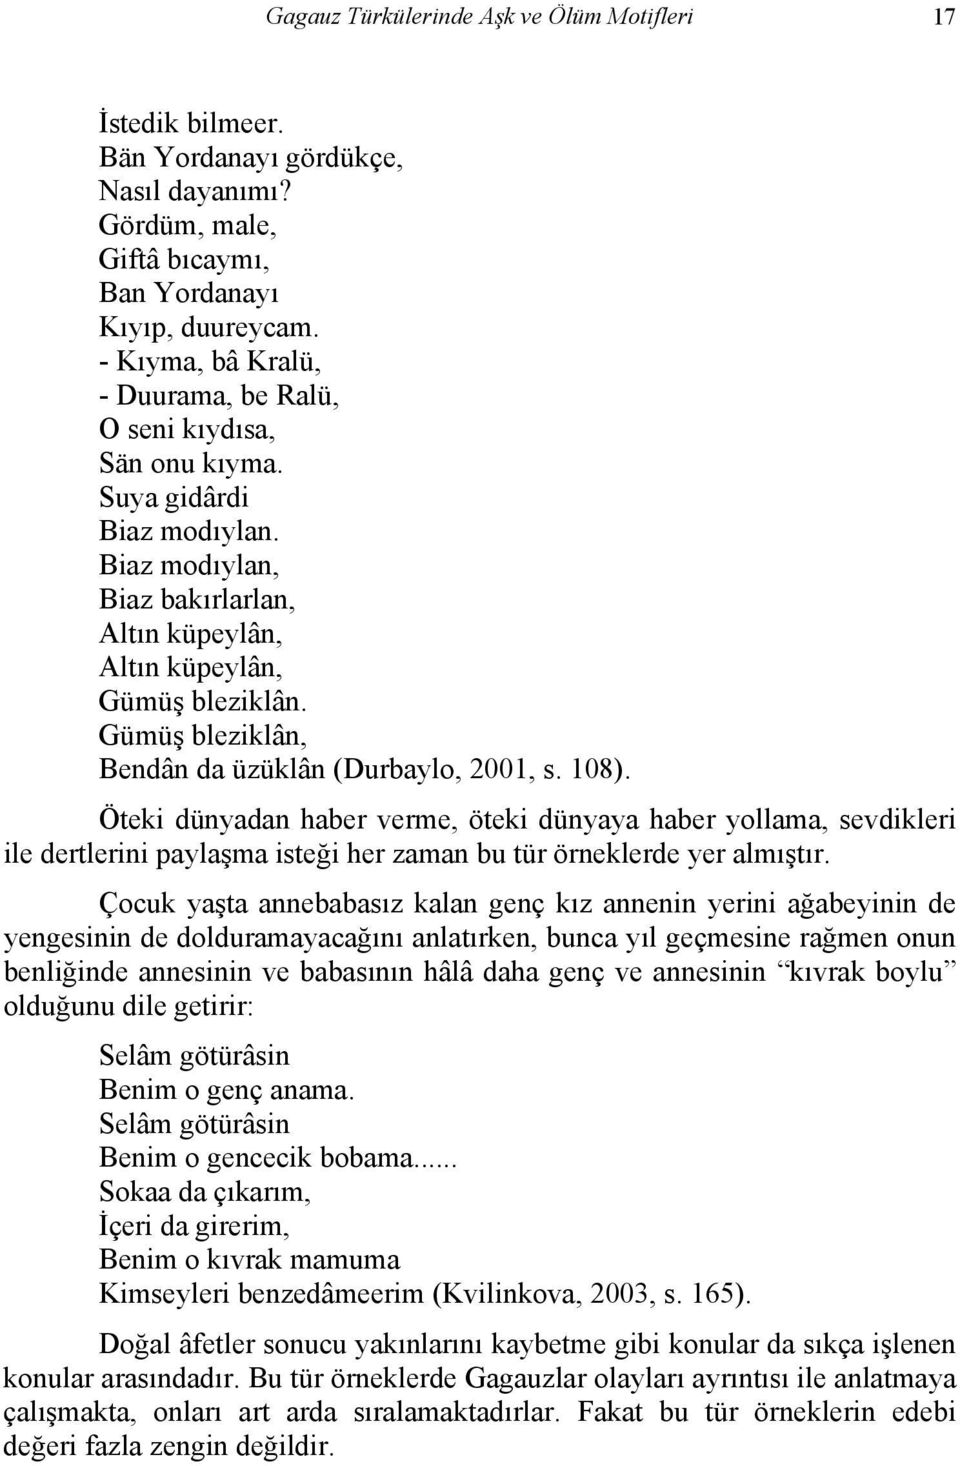 Gümüş bleziklân, Bendân da üzüklân (Durbaylo, 2001, s. 108).